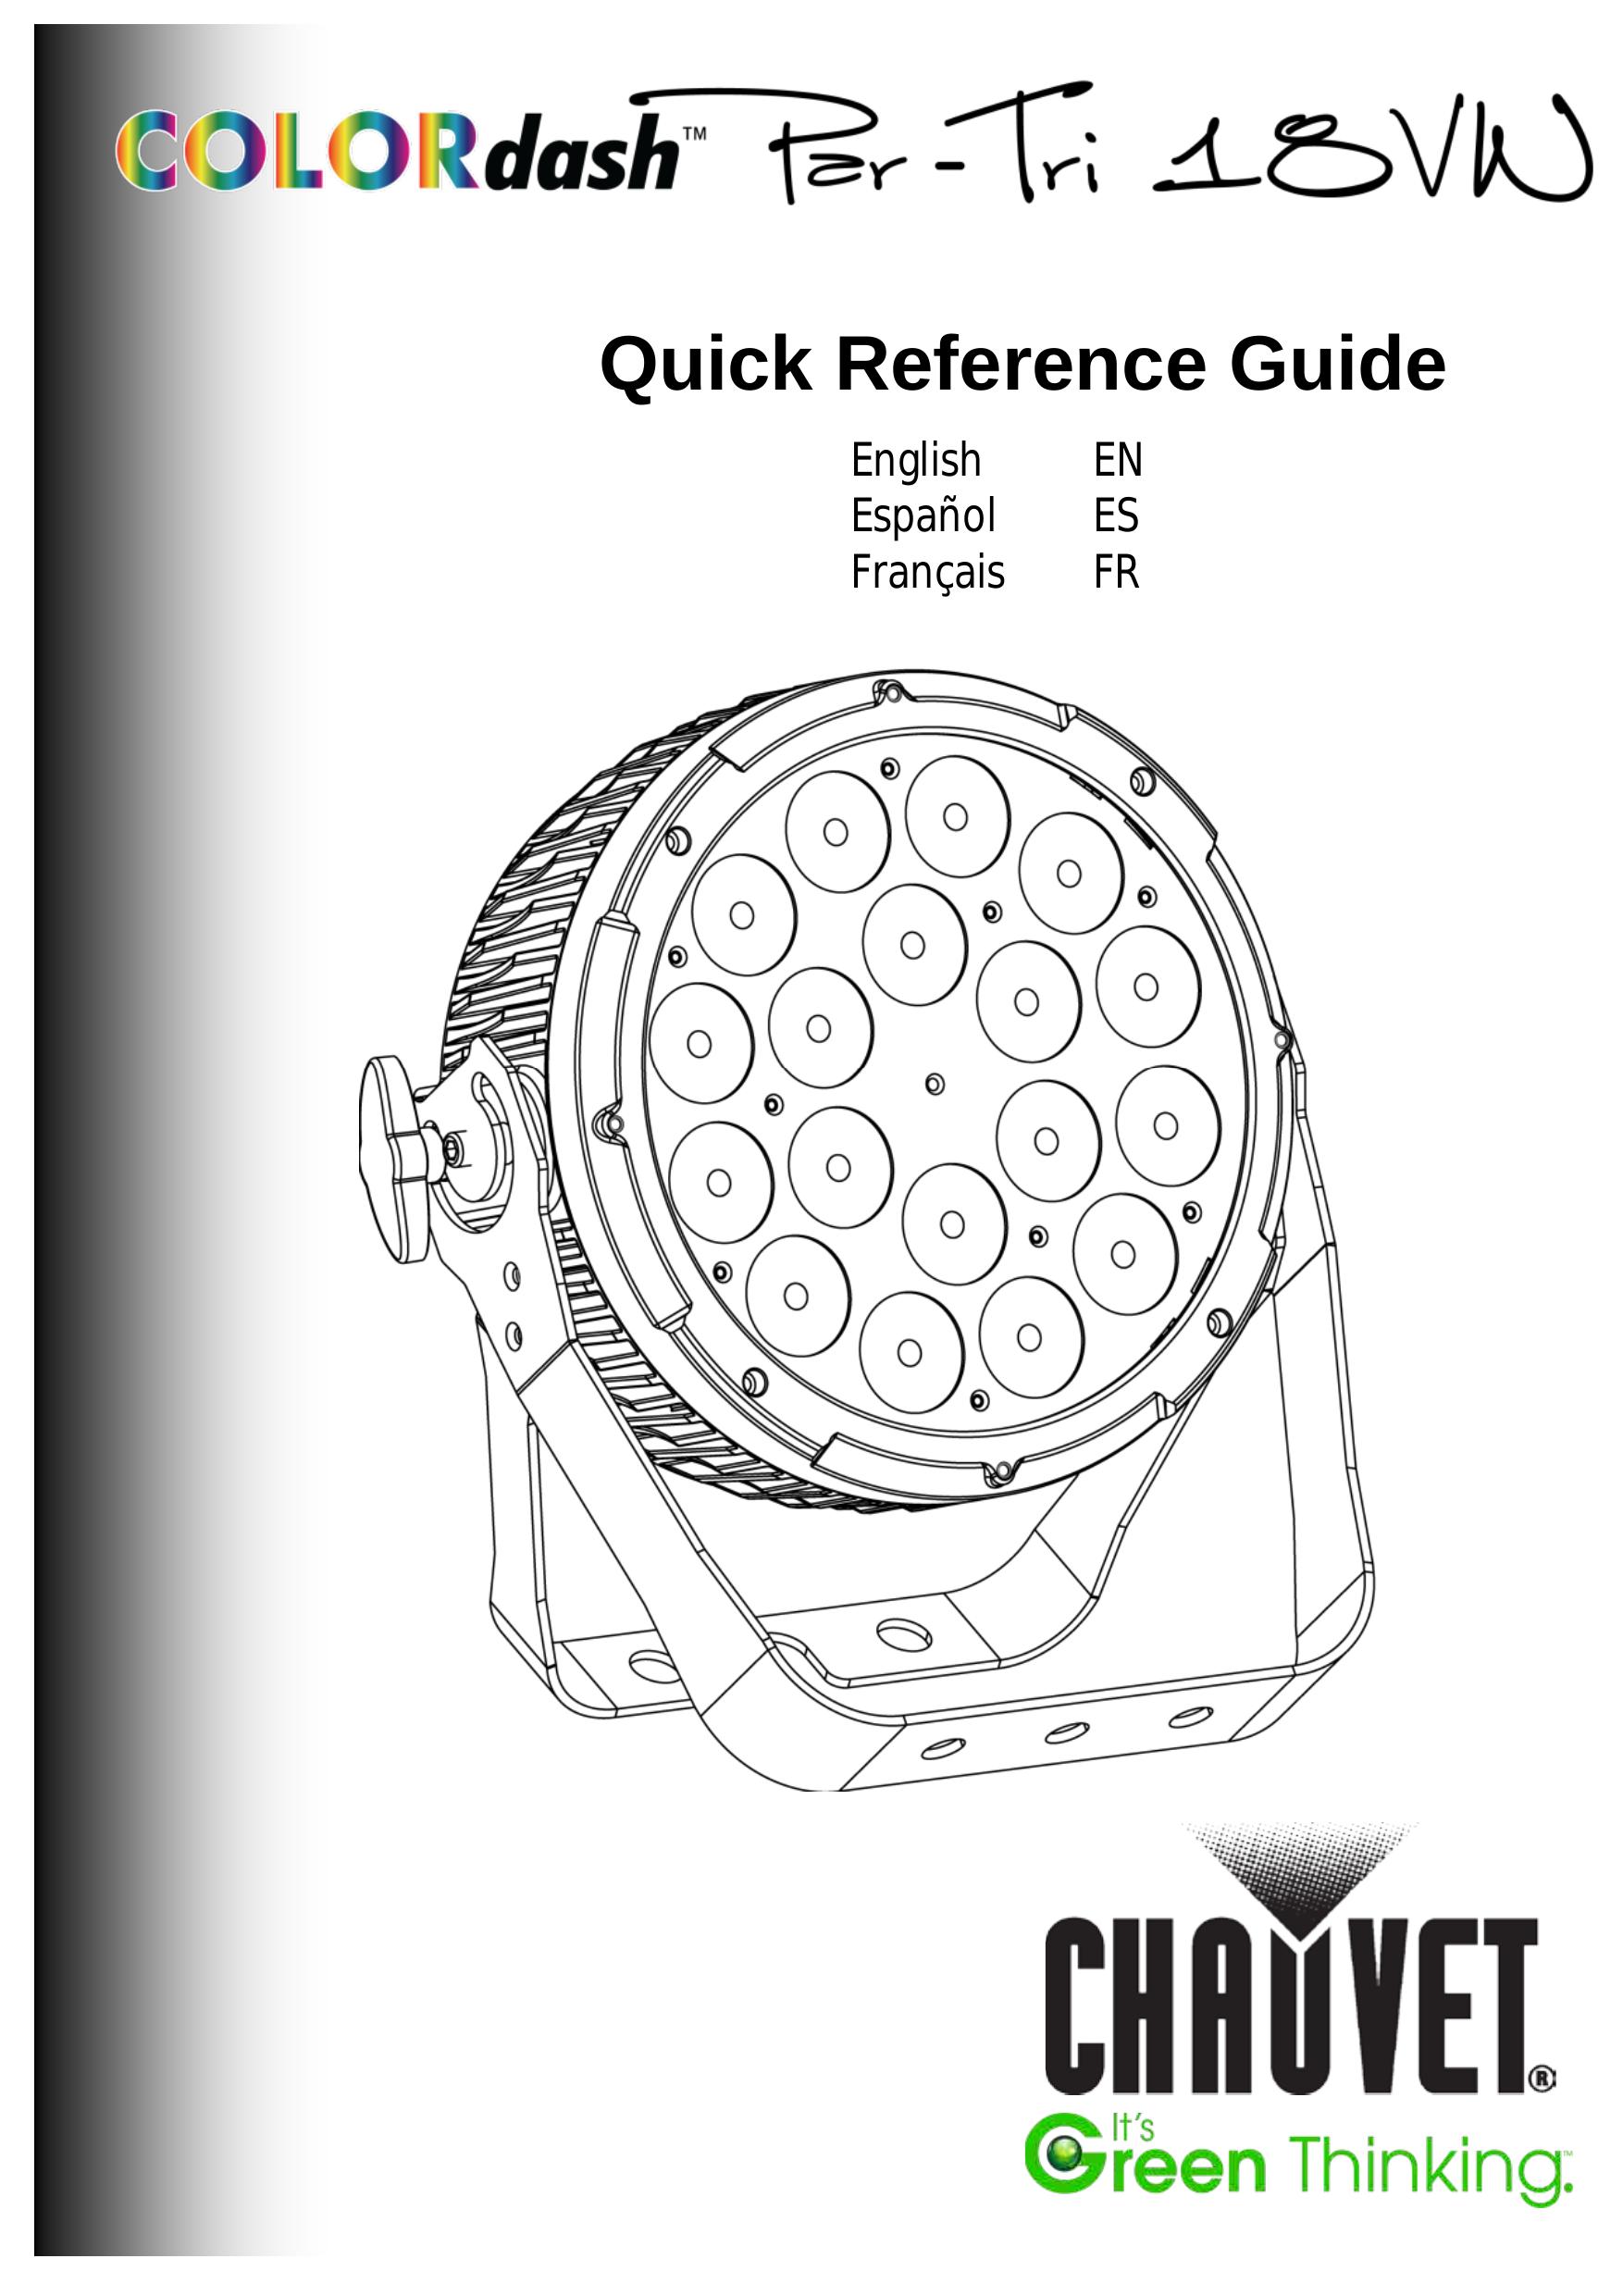 Chauvet 18VW Landscape Lighting User Manual